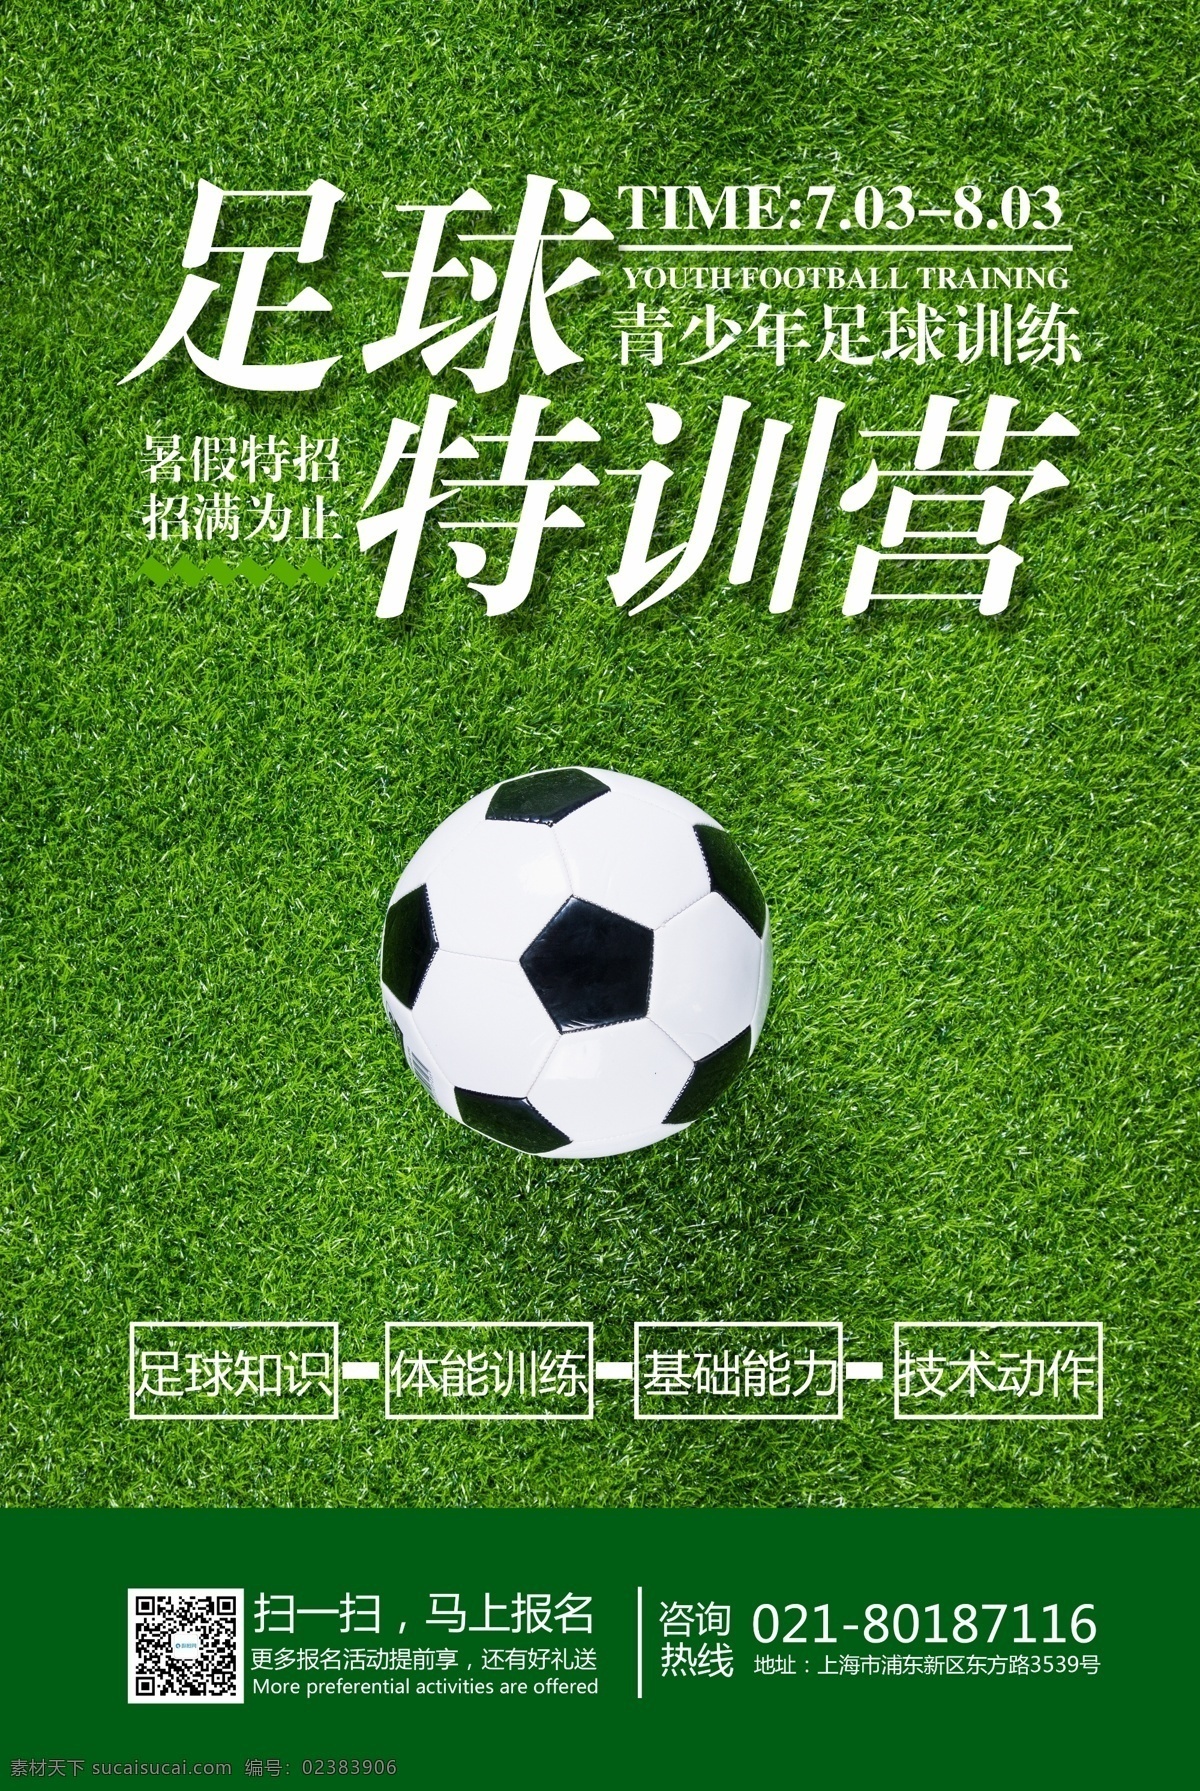 暑假 足球 训练营 招生 海报 运动 训练班 足球训练班 招生海报 暑假班 青少年 训练